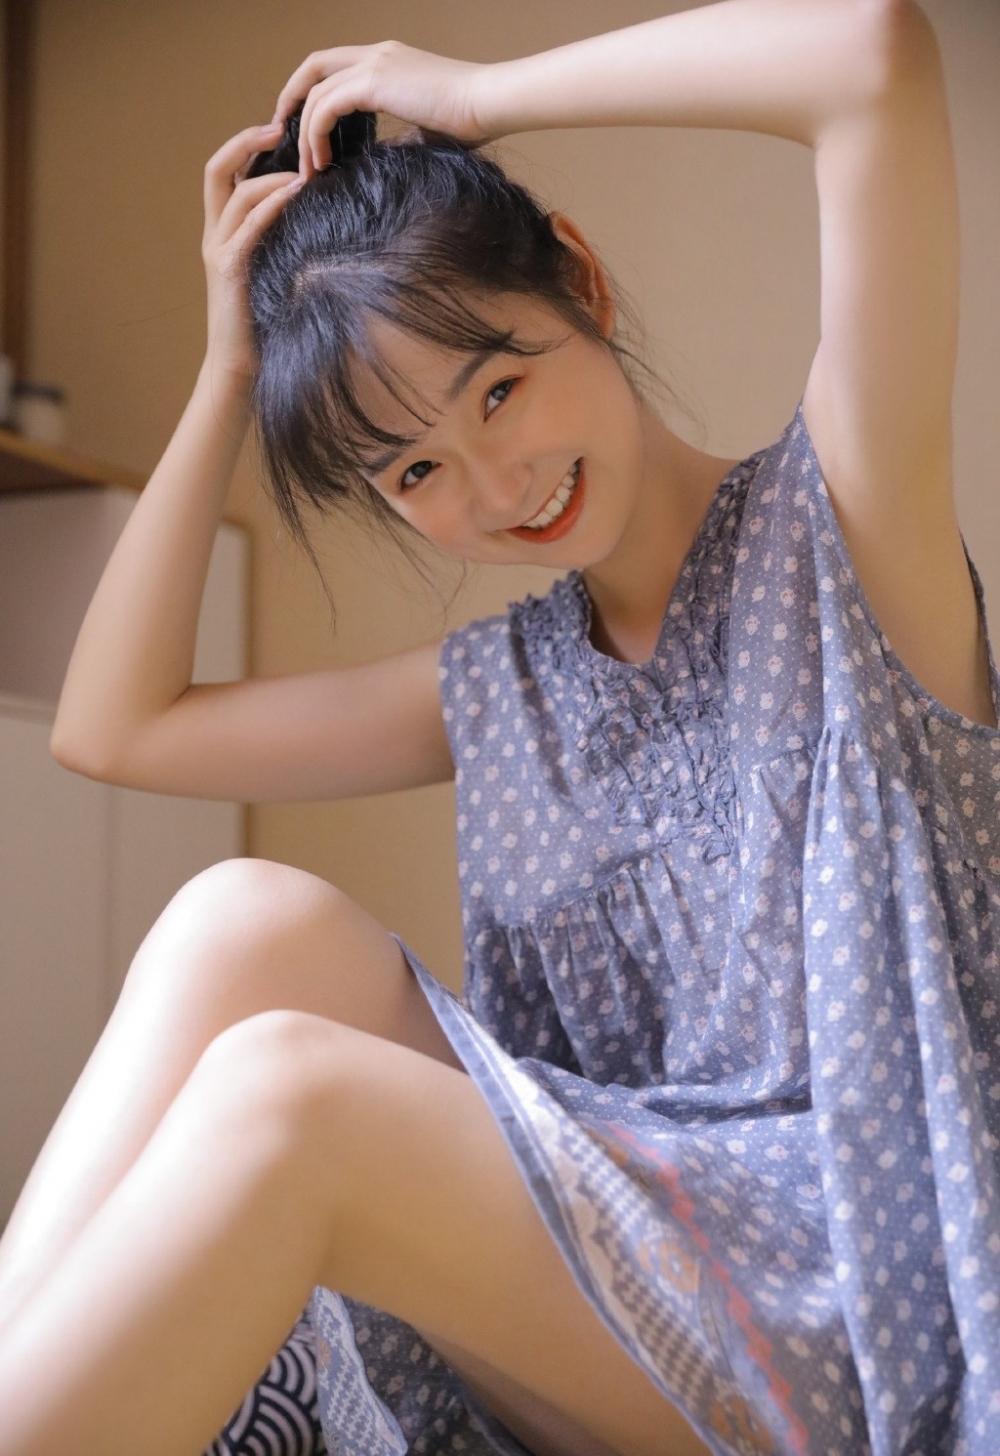 元气美女齐刘海发型夏季连衣裙苗条身材个人写真艺术